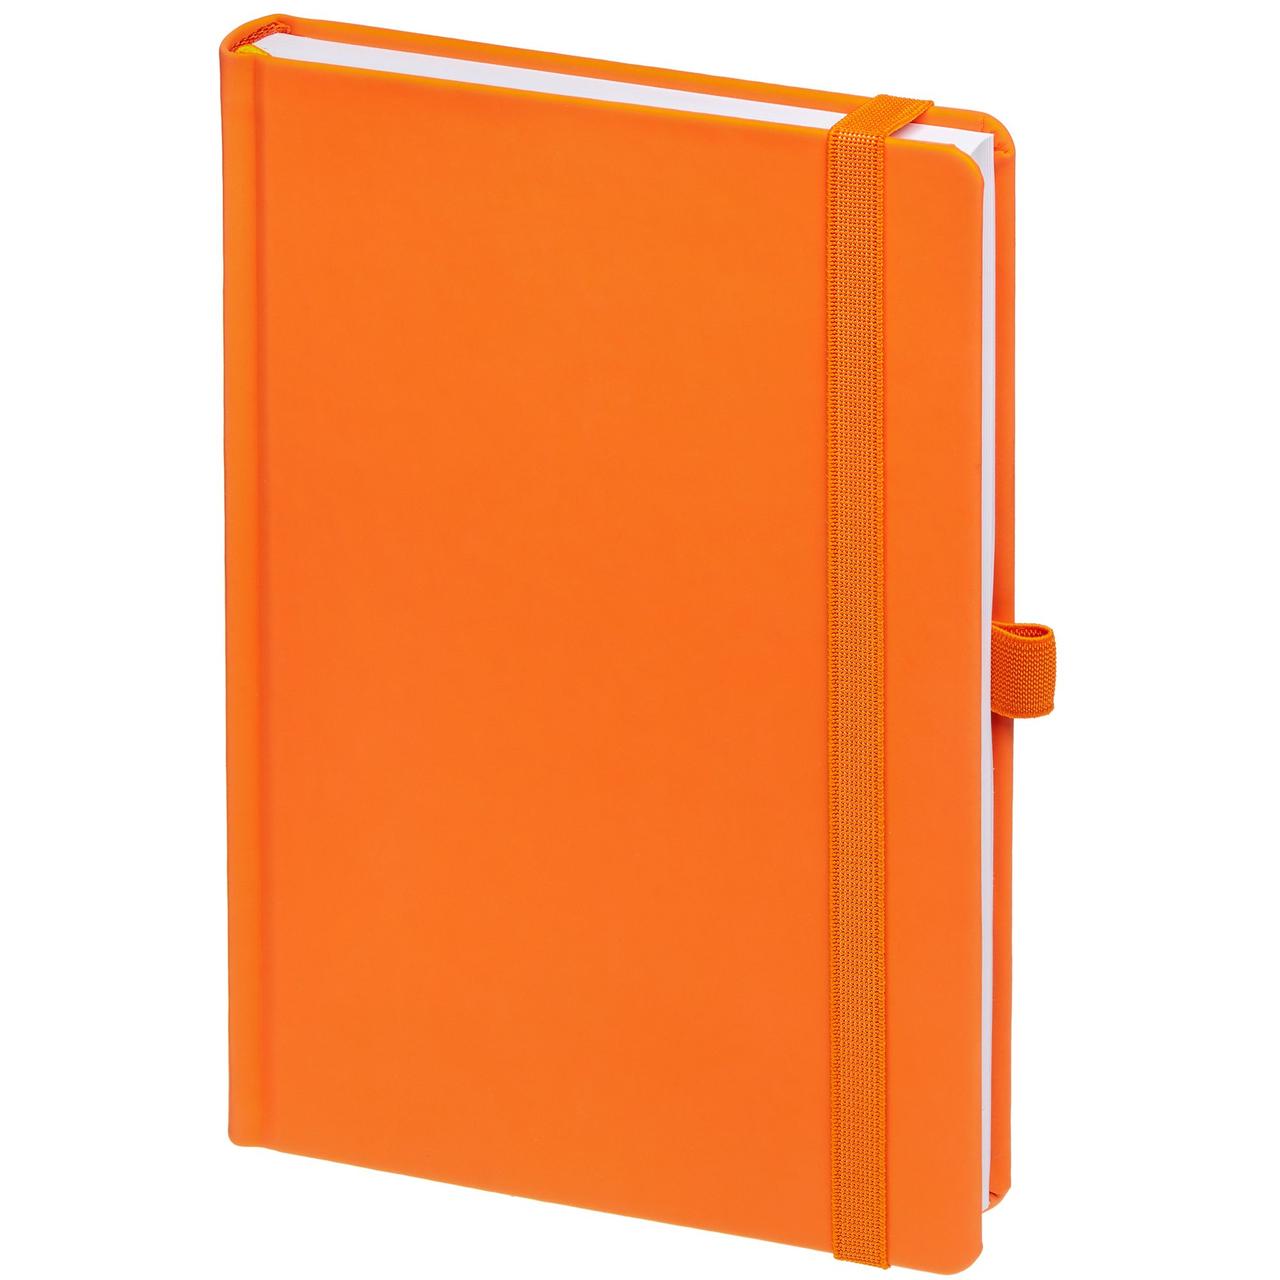 Ежедневник Favor, недатированный, оранжевый (артикул 17072.20), фото 1